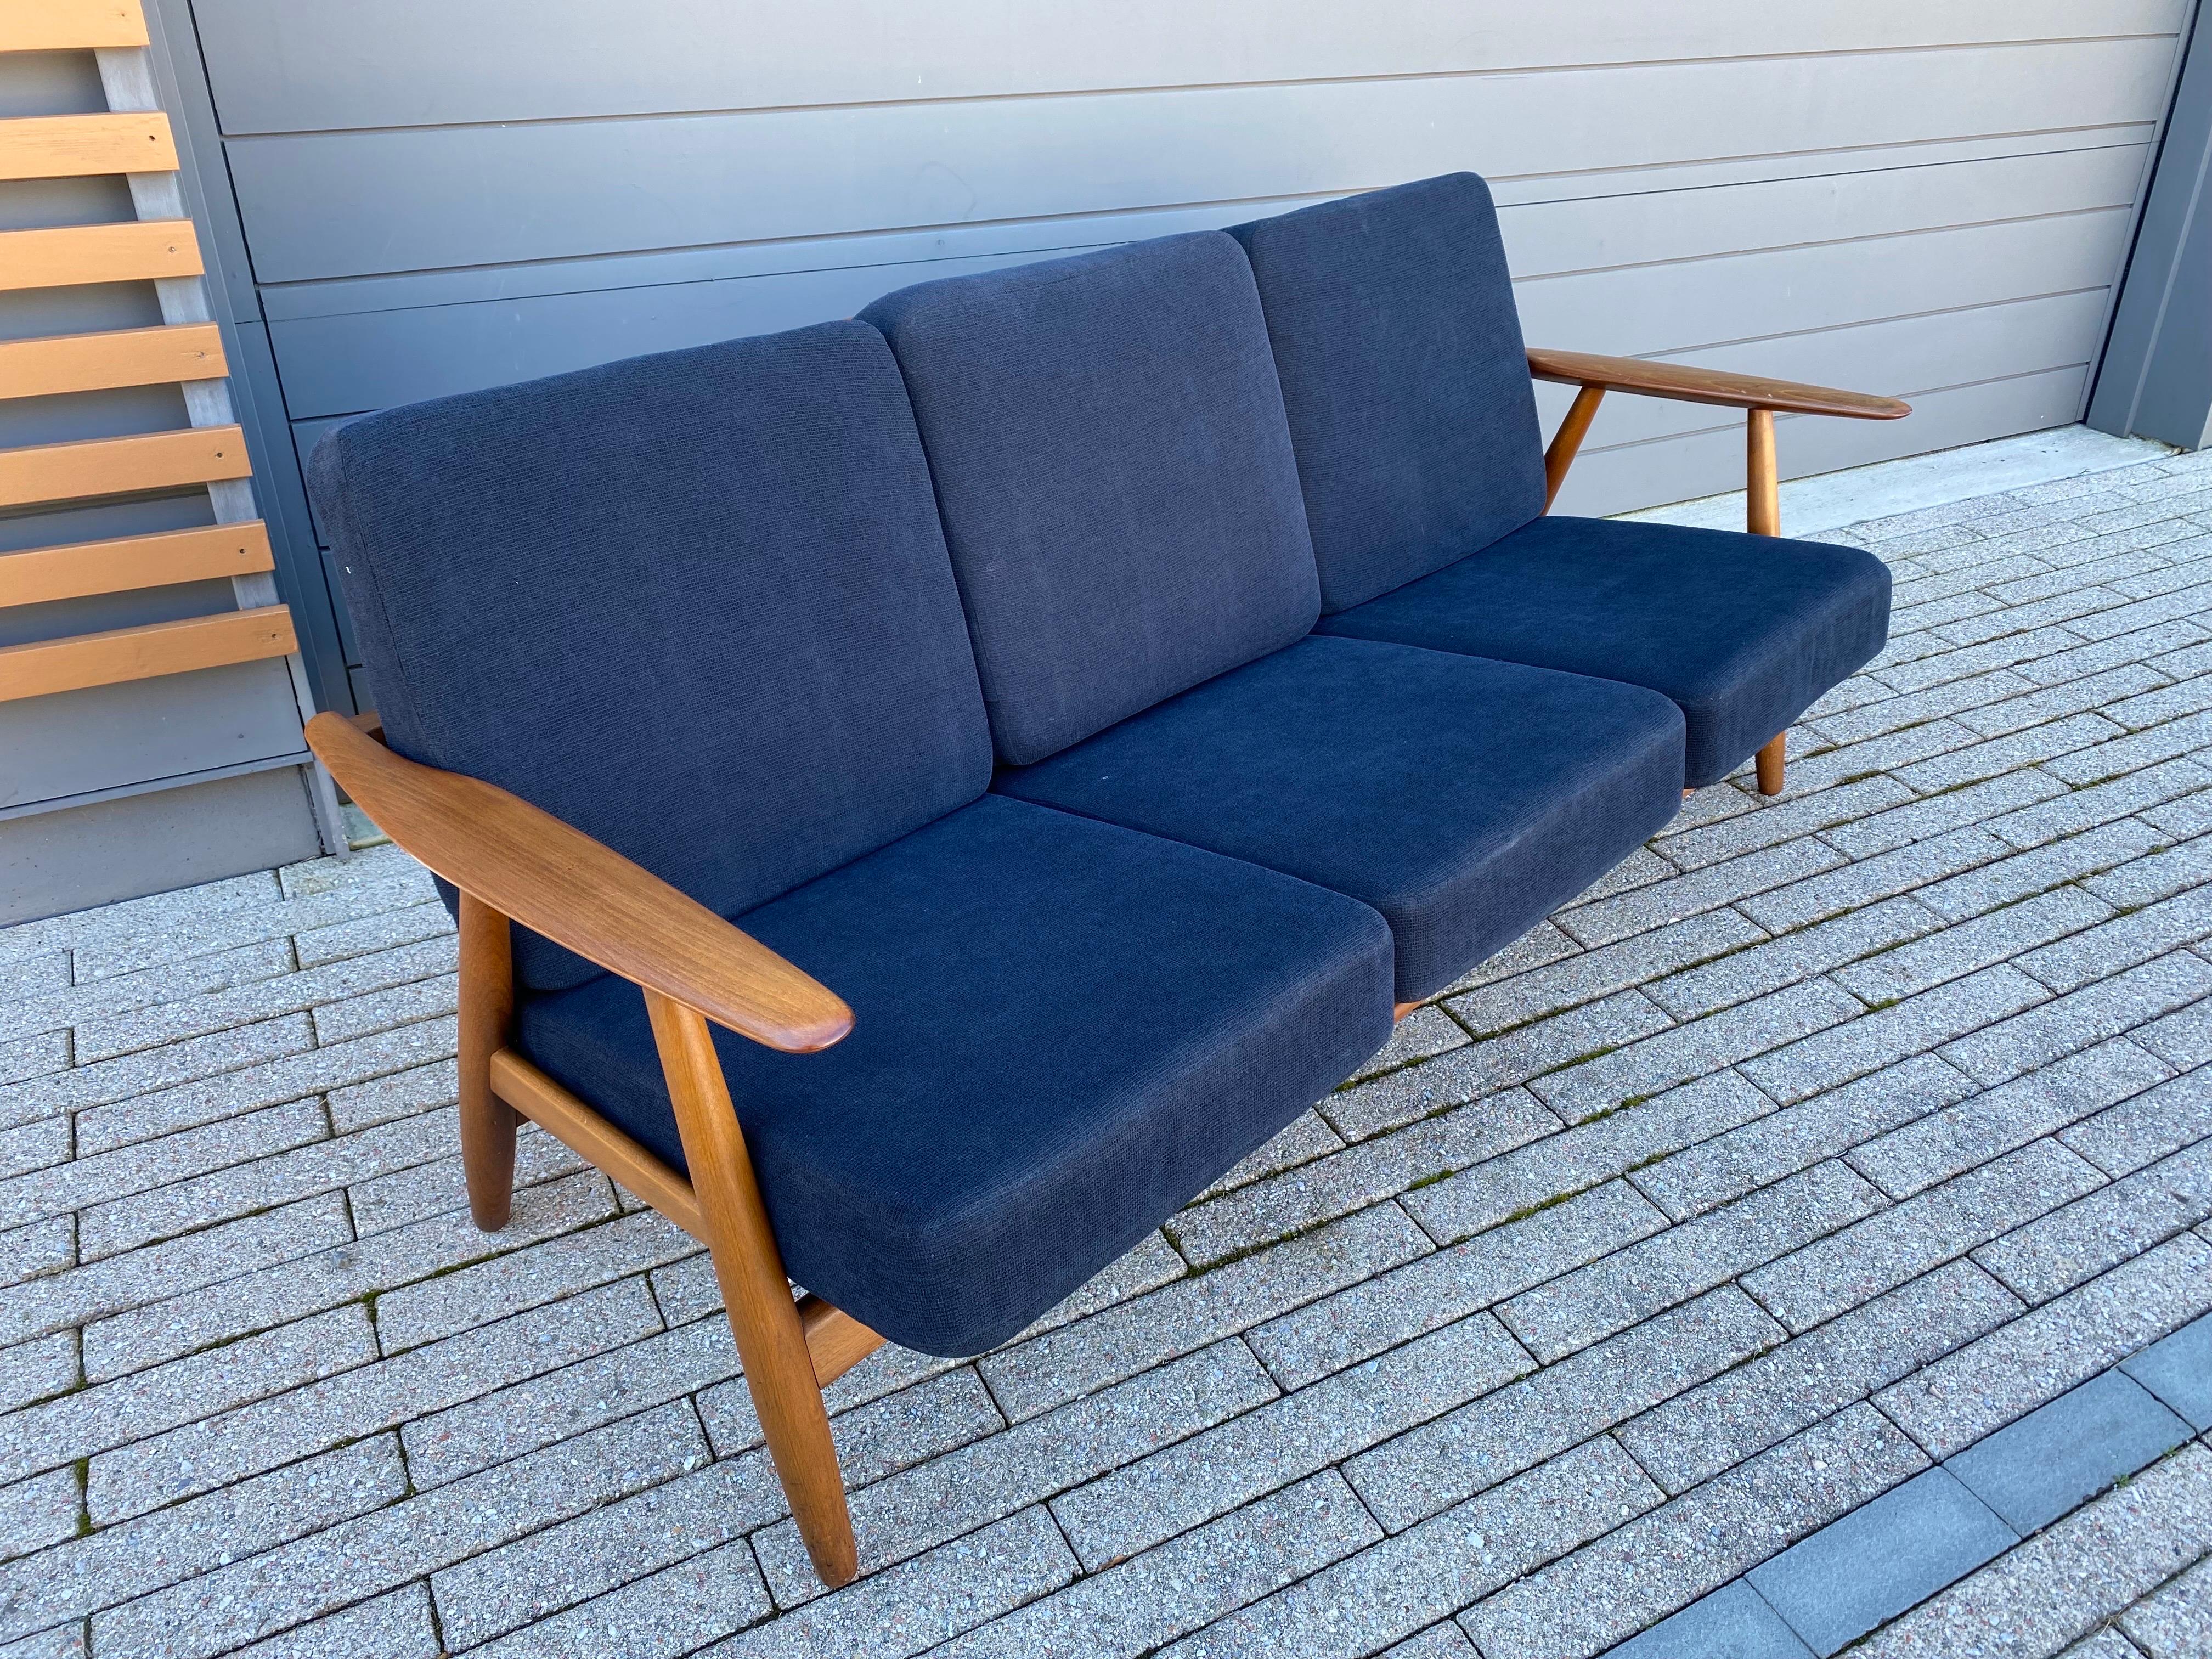 Hans Wegner für GETAMA GE-240 3-sitziges Sofa. Korpus aus Eiche mit Armlehnen aus Teakholz. Vor etwa 13 Jahren erneuert, aber unter Beibehaltung der originalen inneren Schraubenfedern.  Sieht aus, als wären die Arme irgendwann nachgearbeitet worden.